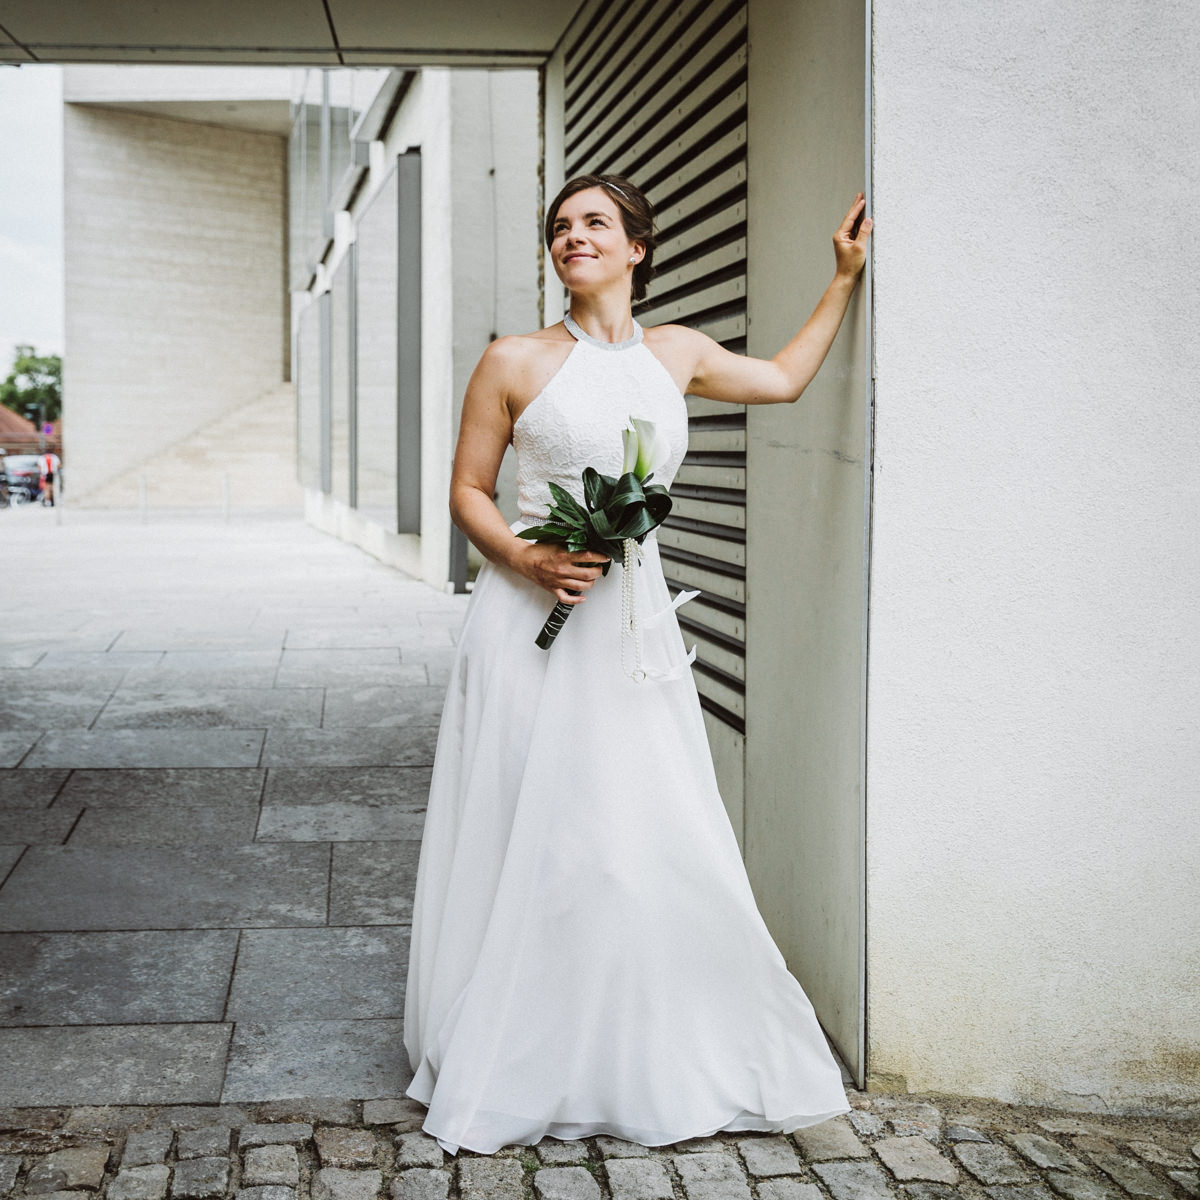 Hochzeit in Schweinfurt, Hochzeitsfotos, Hochzeitsbilder, Hochzeitsreportage, Nike und Stefan, Standesamt Schweinfurt, Hochzeit 2017